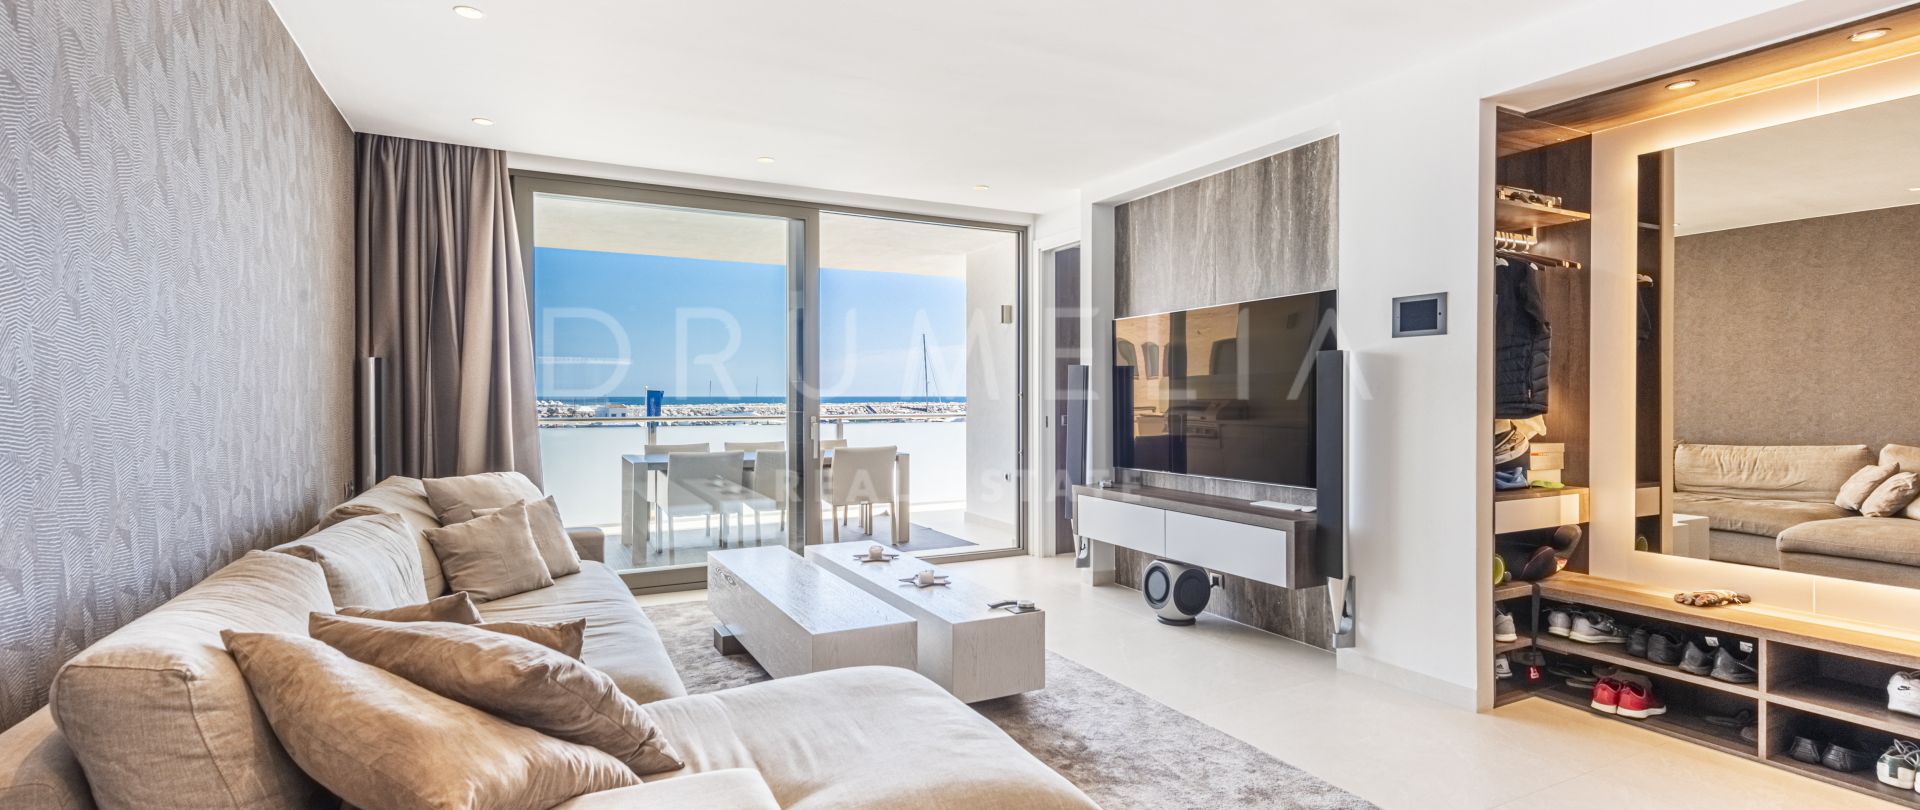 Apartamento único, elegante y moderno de estilo Hollywood en el glorioso Puerto Banús, Marbella